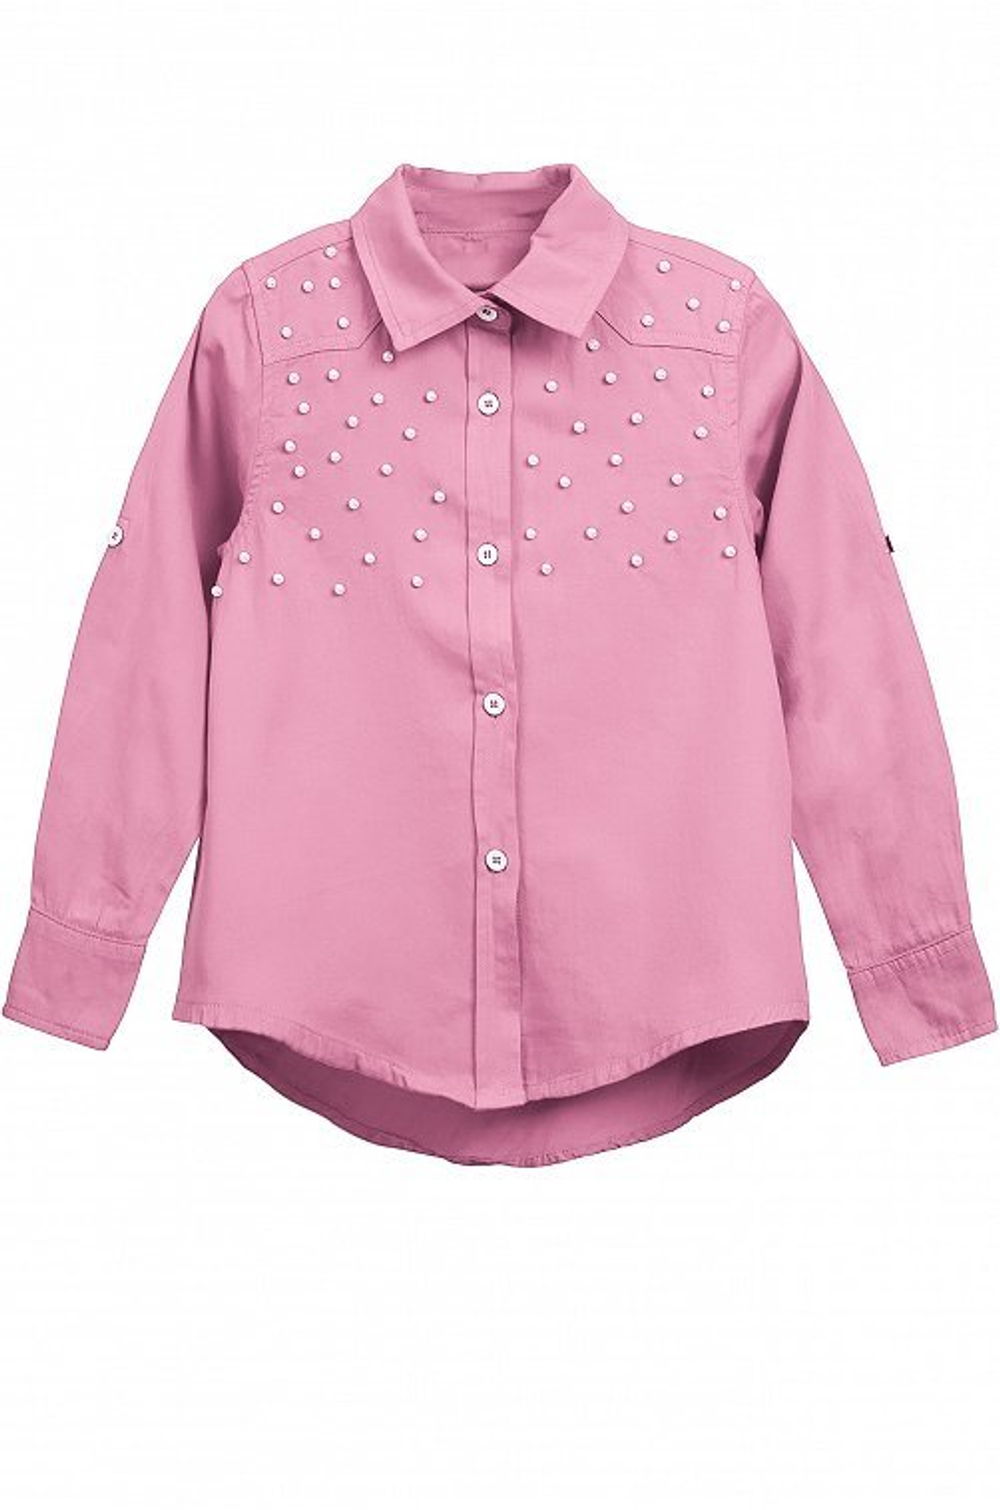 Блузка для девочки розовая купить